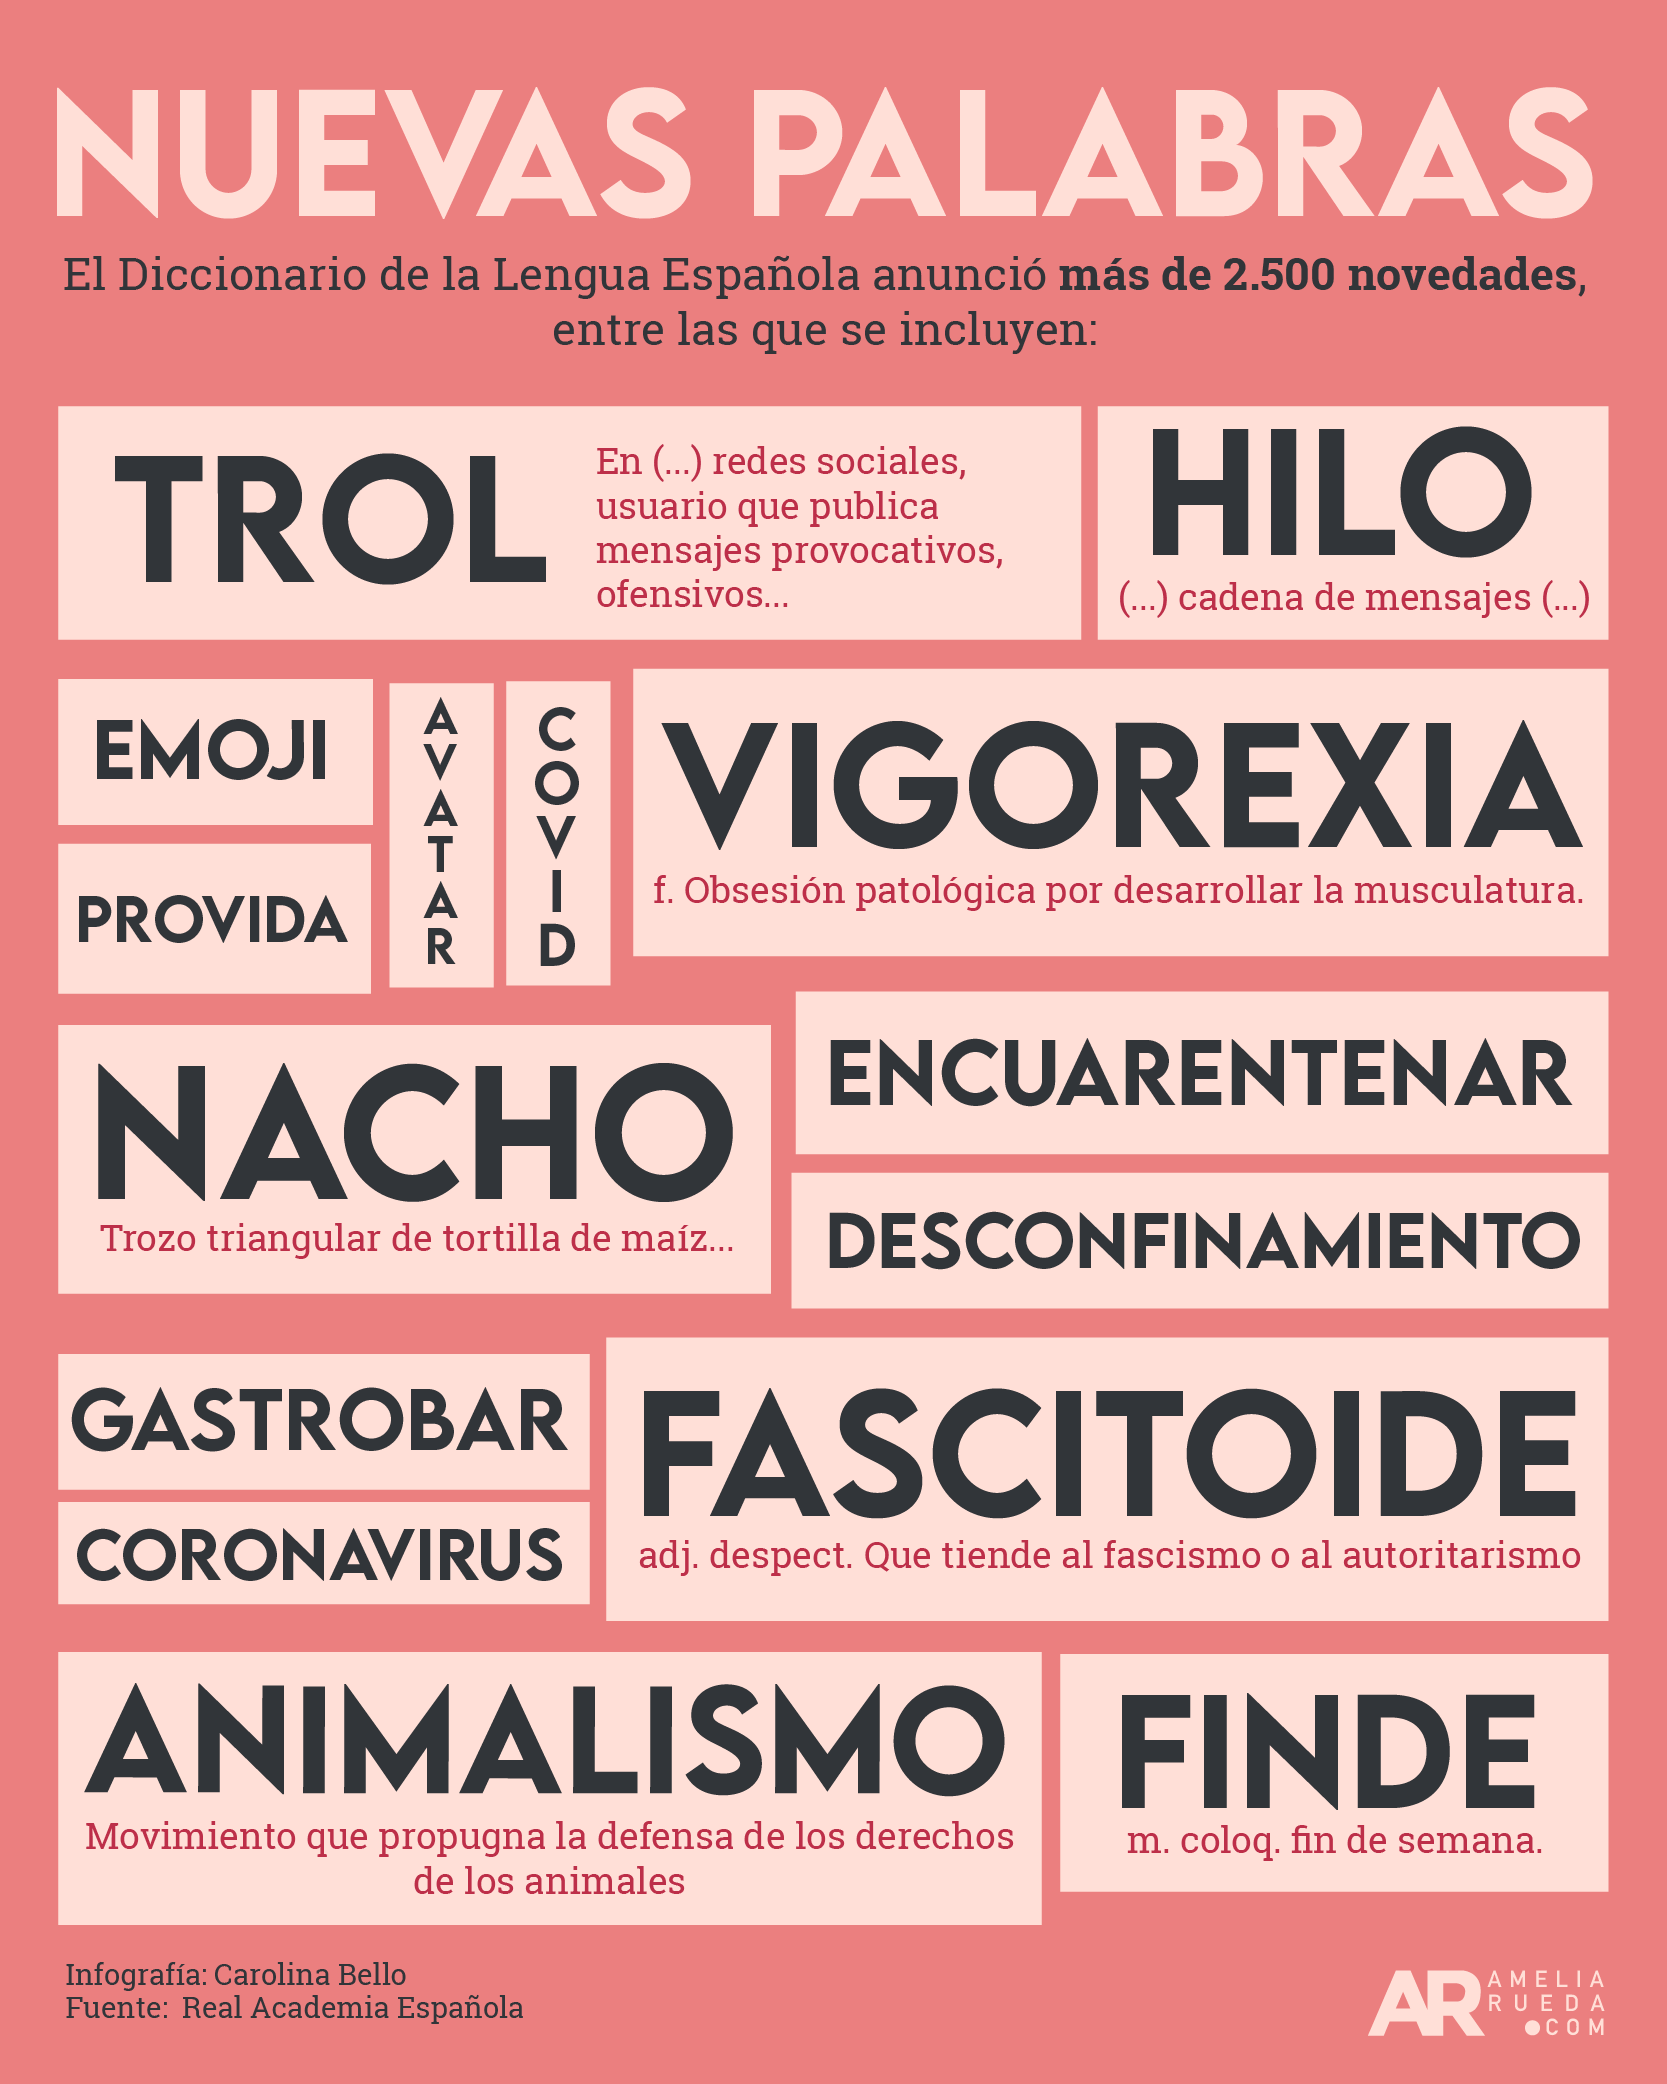 Nuevas palabras en el Diccionario de la Lengua Española